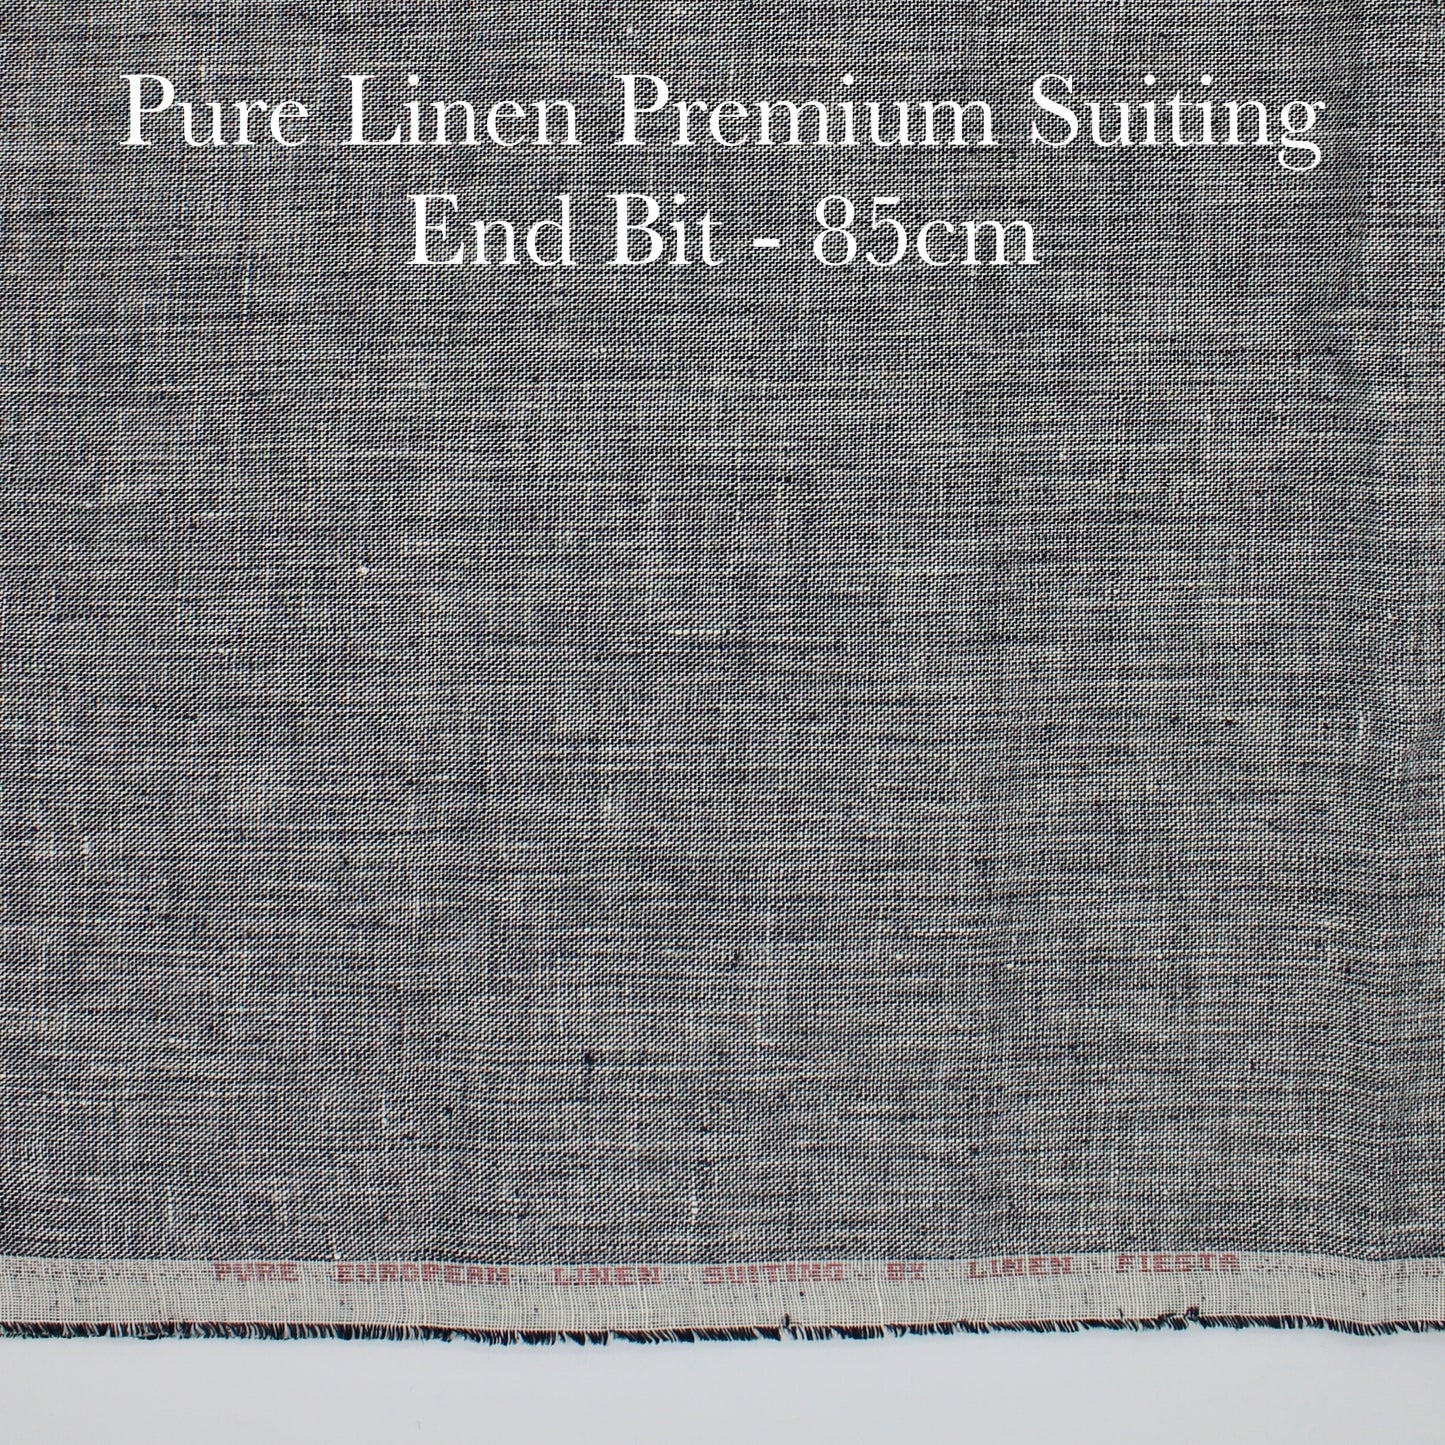 80 Cm Pure Linen Suiting - END BIT (50%)